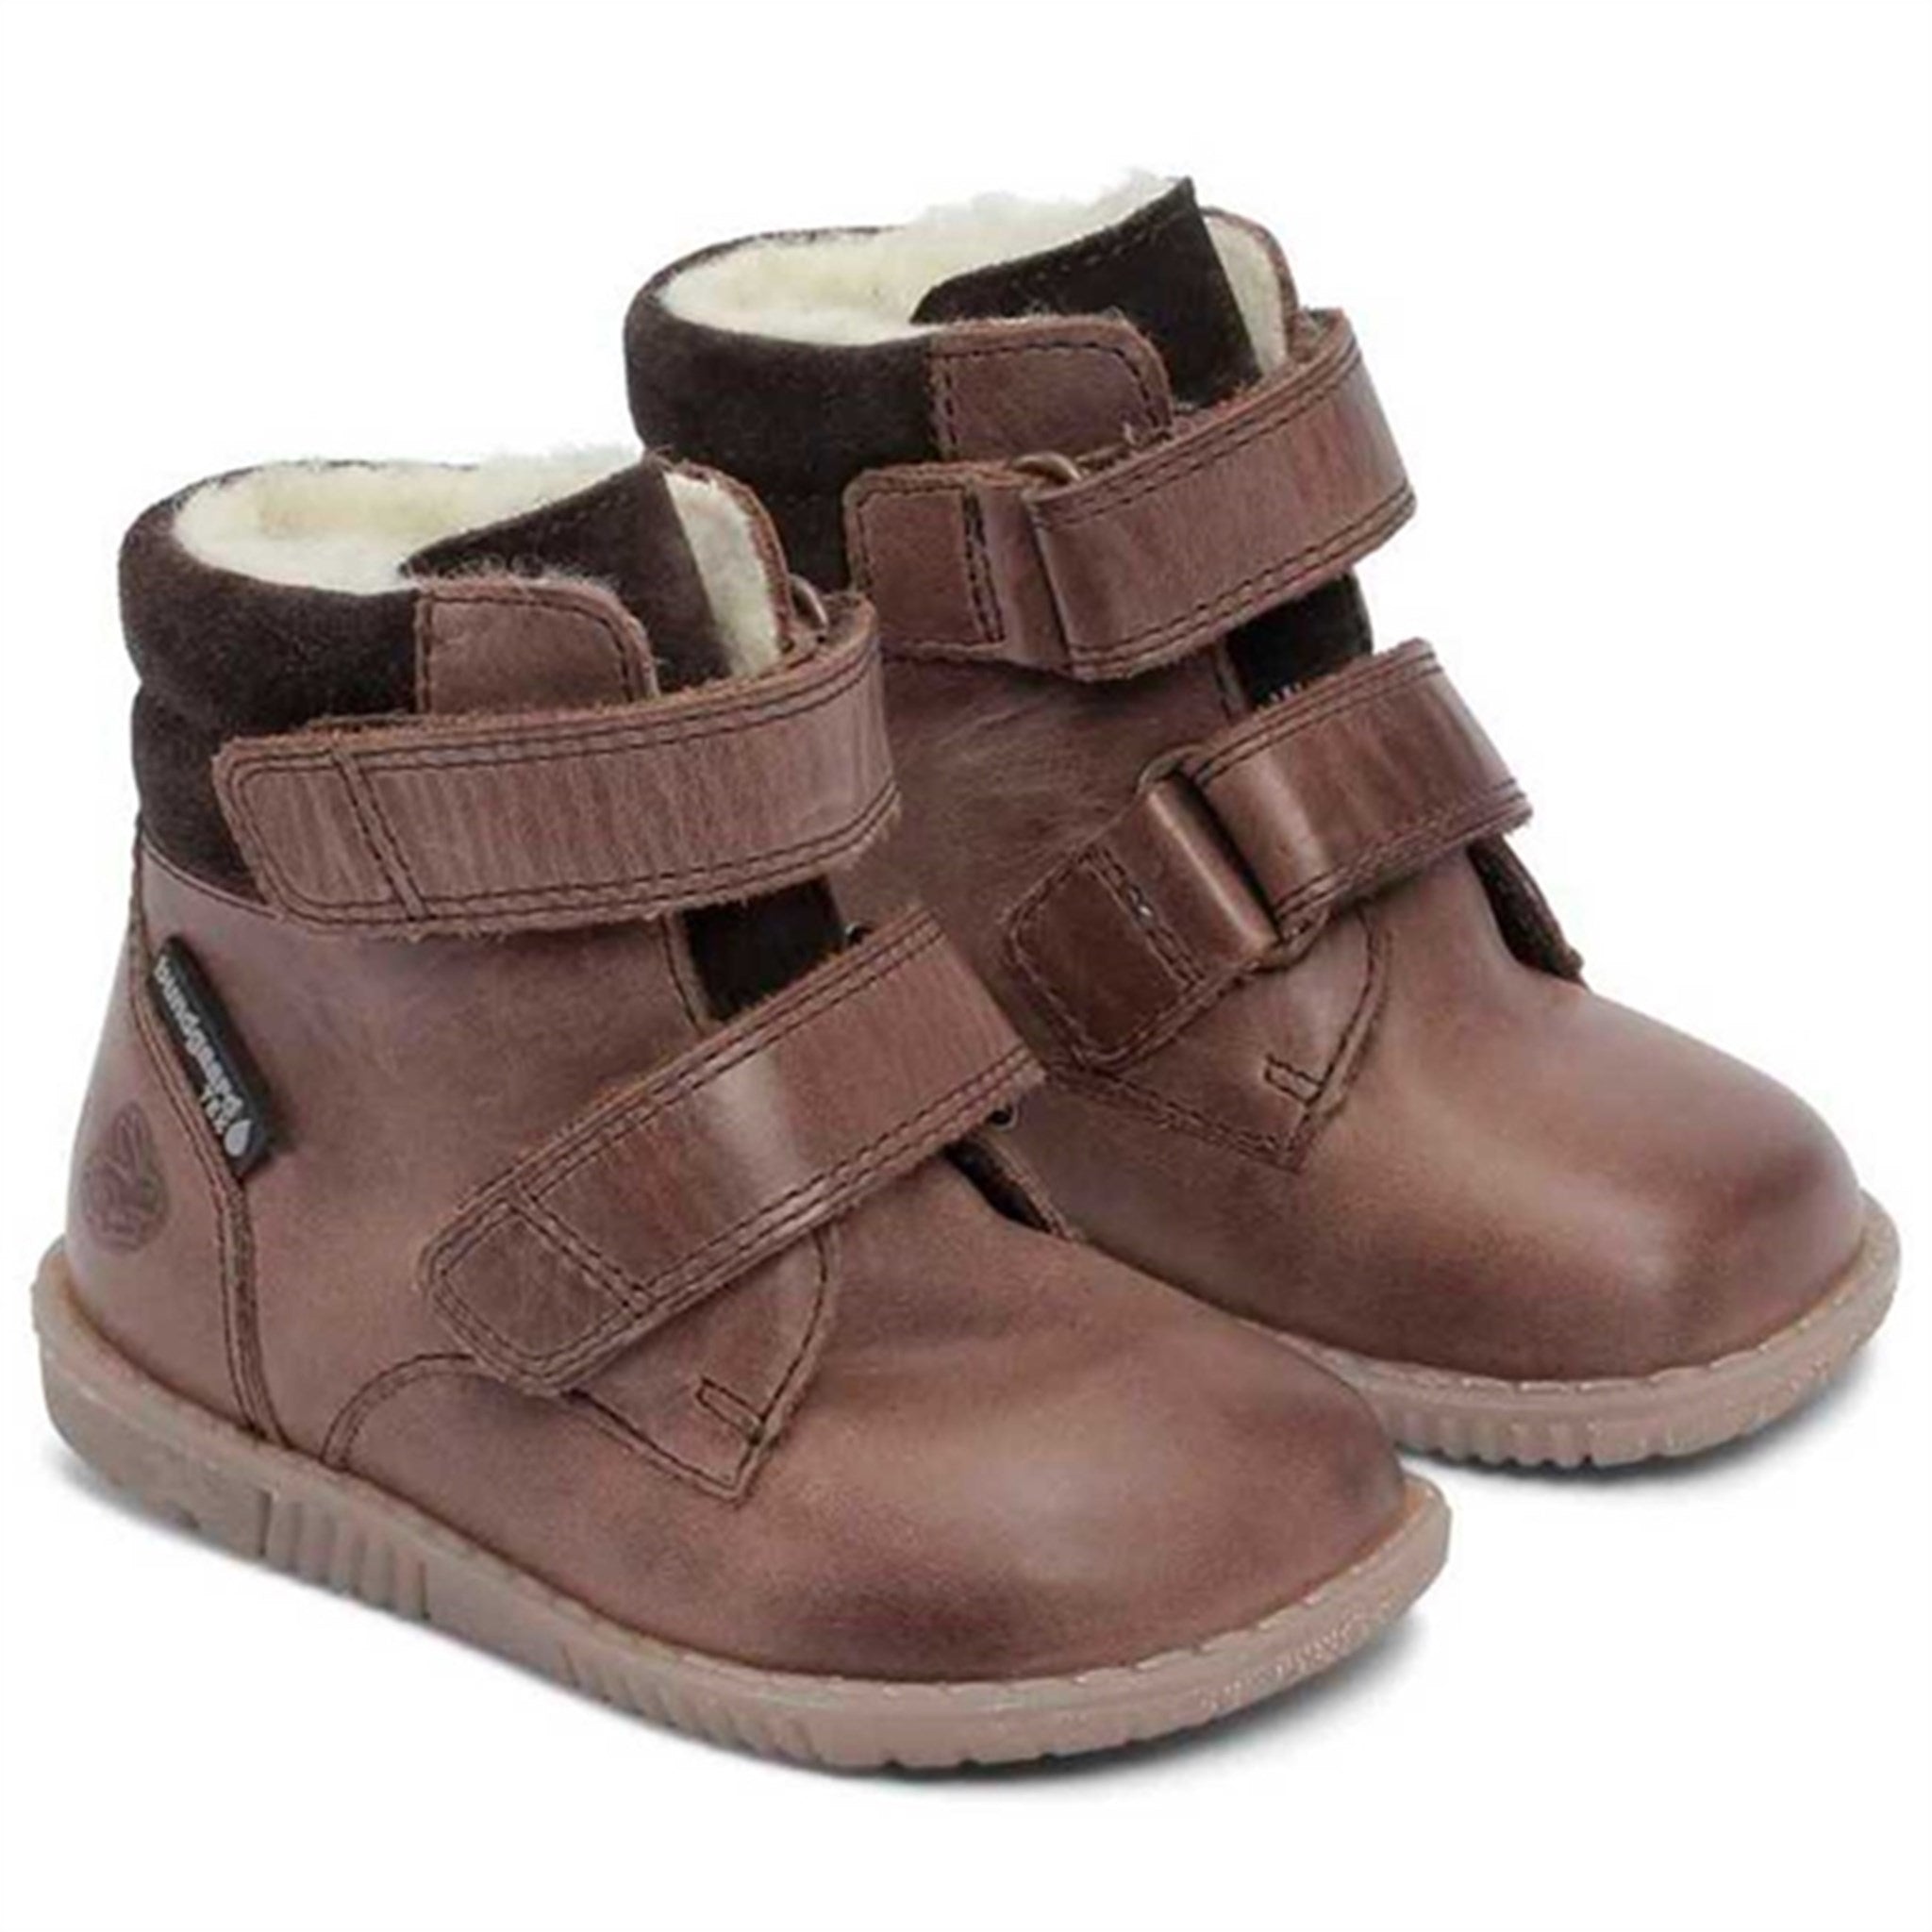 Bundgaard Rabbit Boots Velcro Brown 2